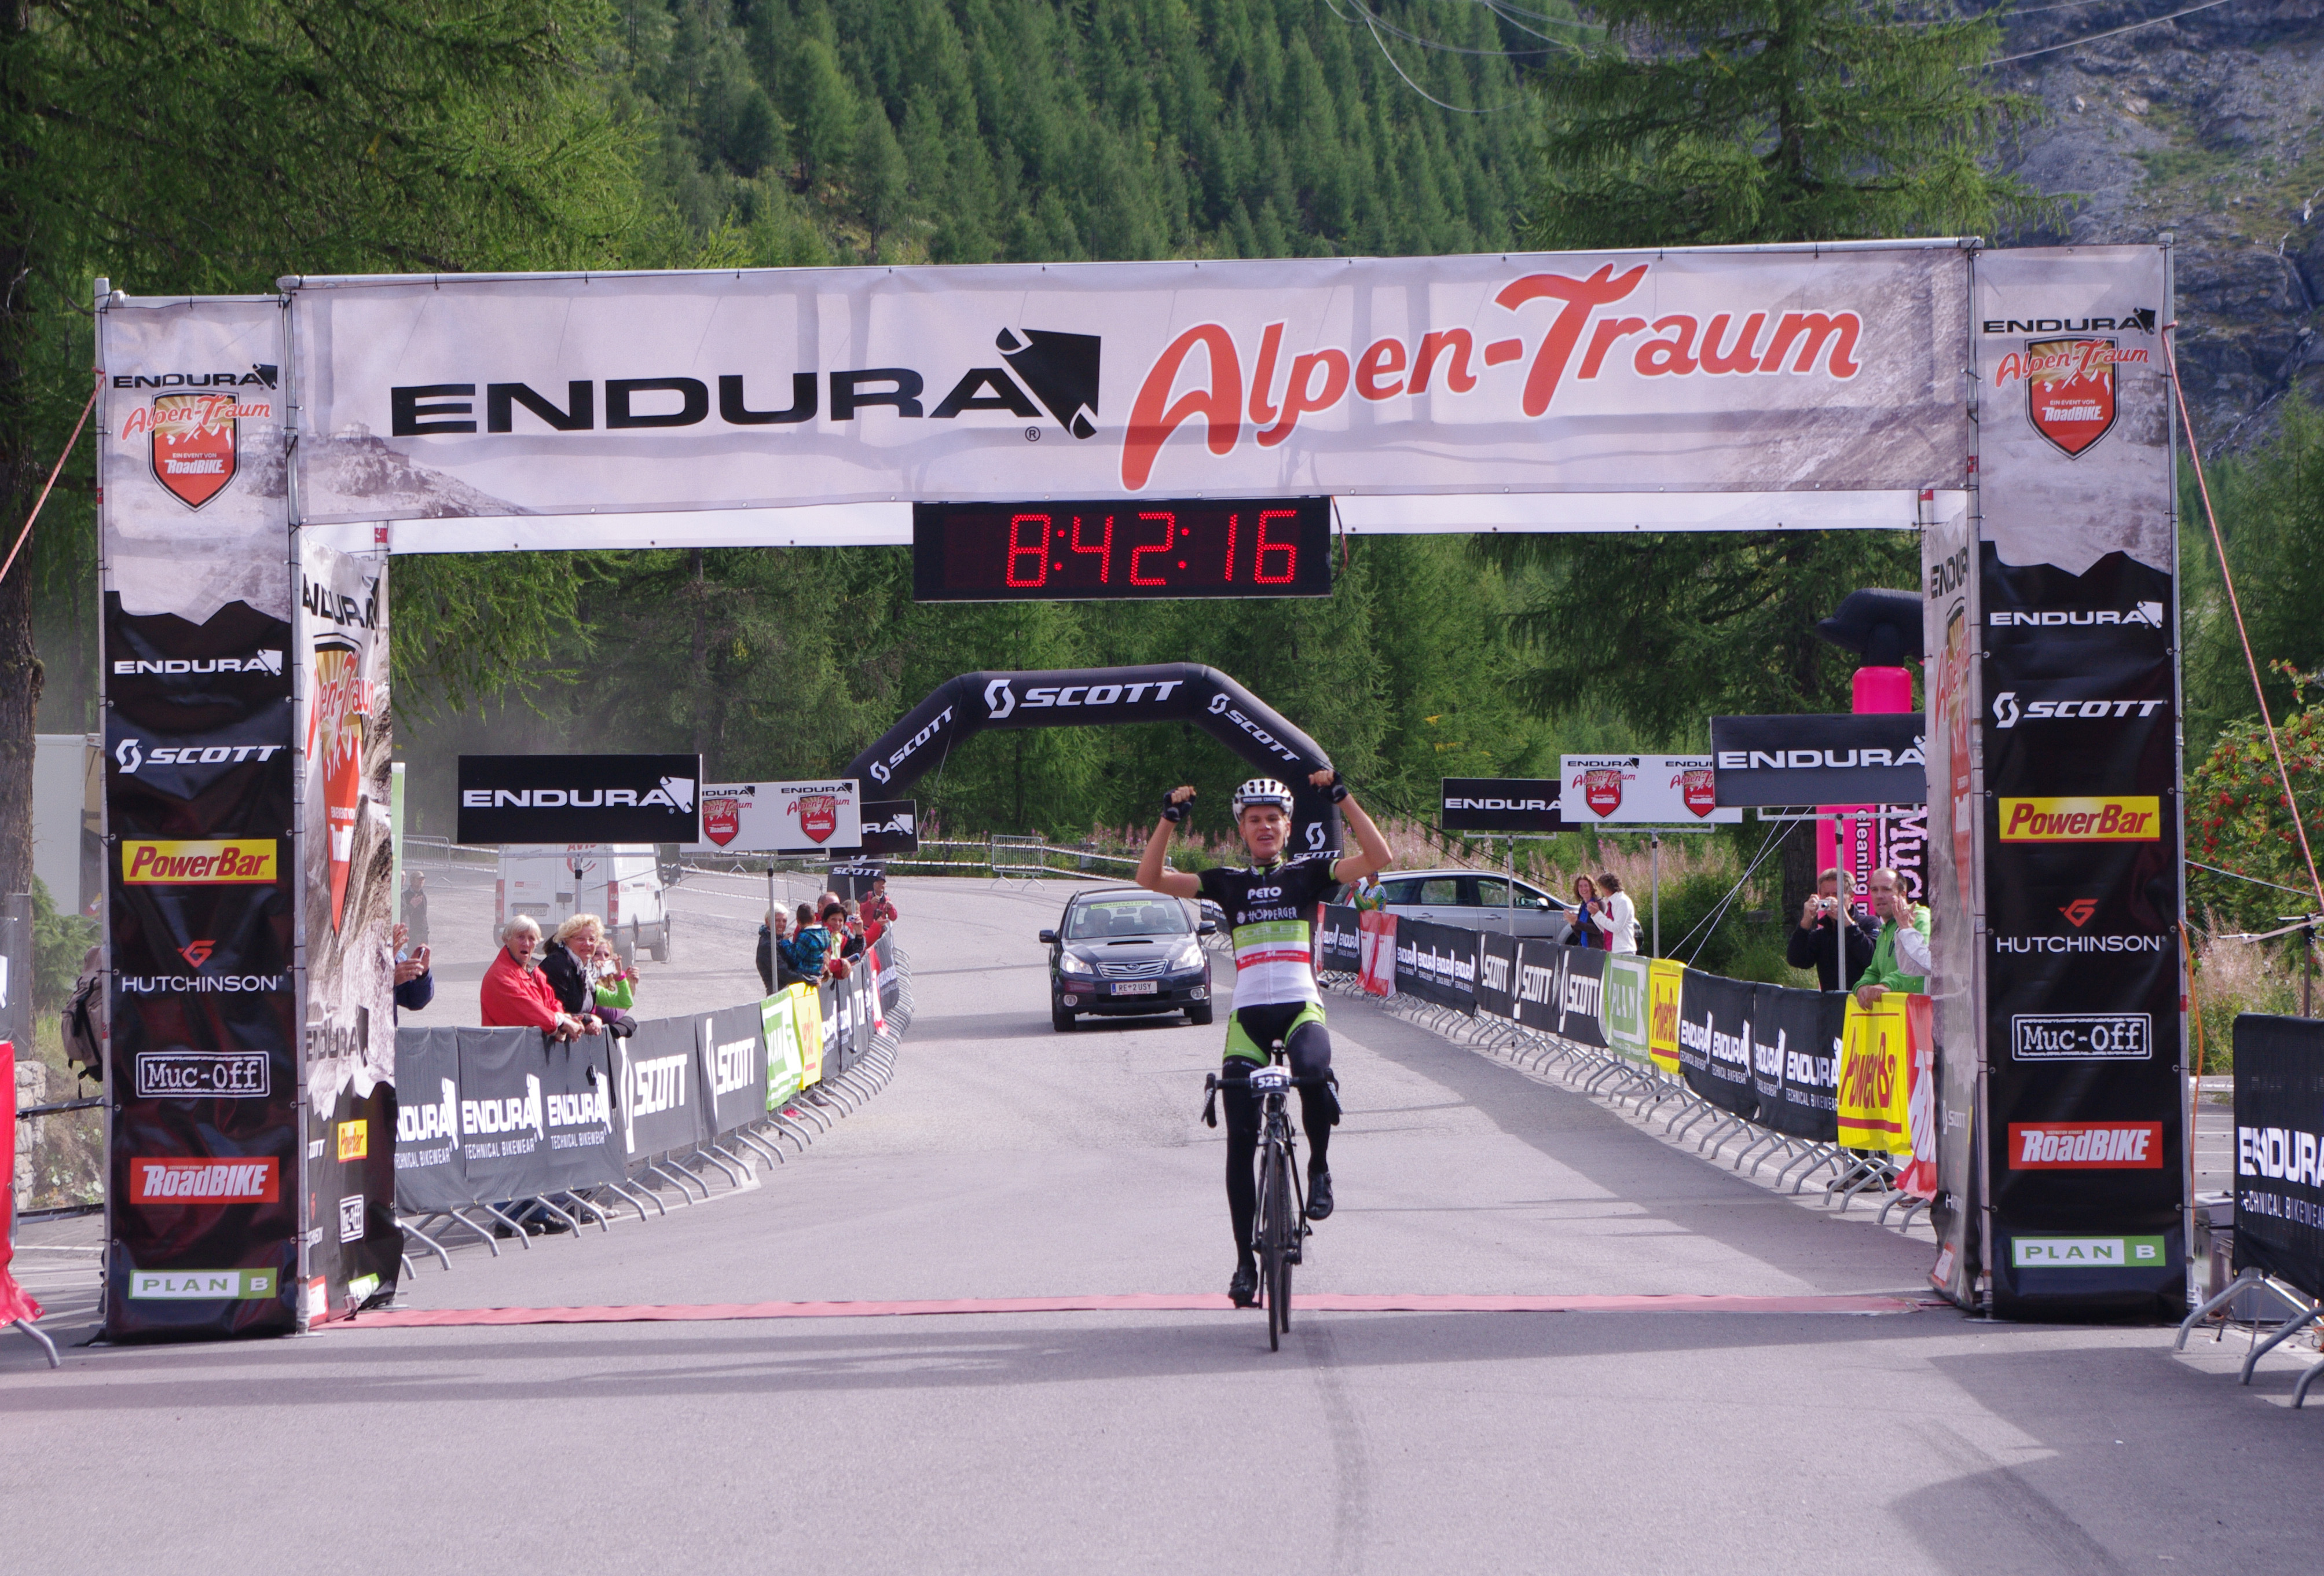 ENDURA Alpen-Traum 2013: le classifiche